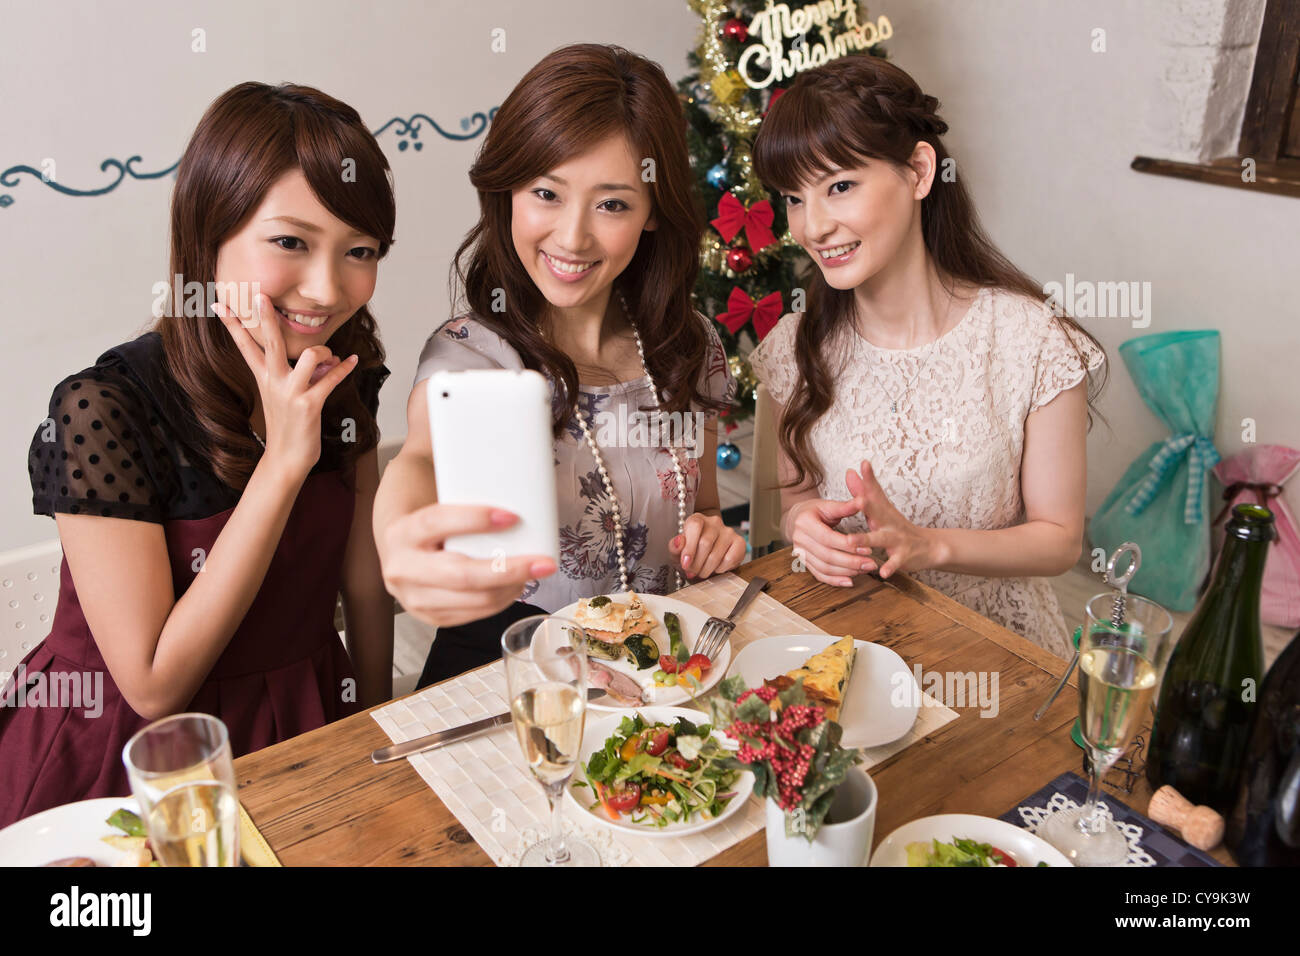 Drei junge Frauen fotografieren mit Smartphone Christmas Party Stockfoto